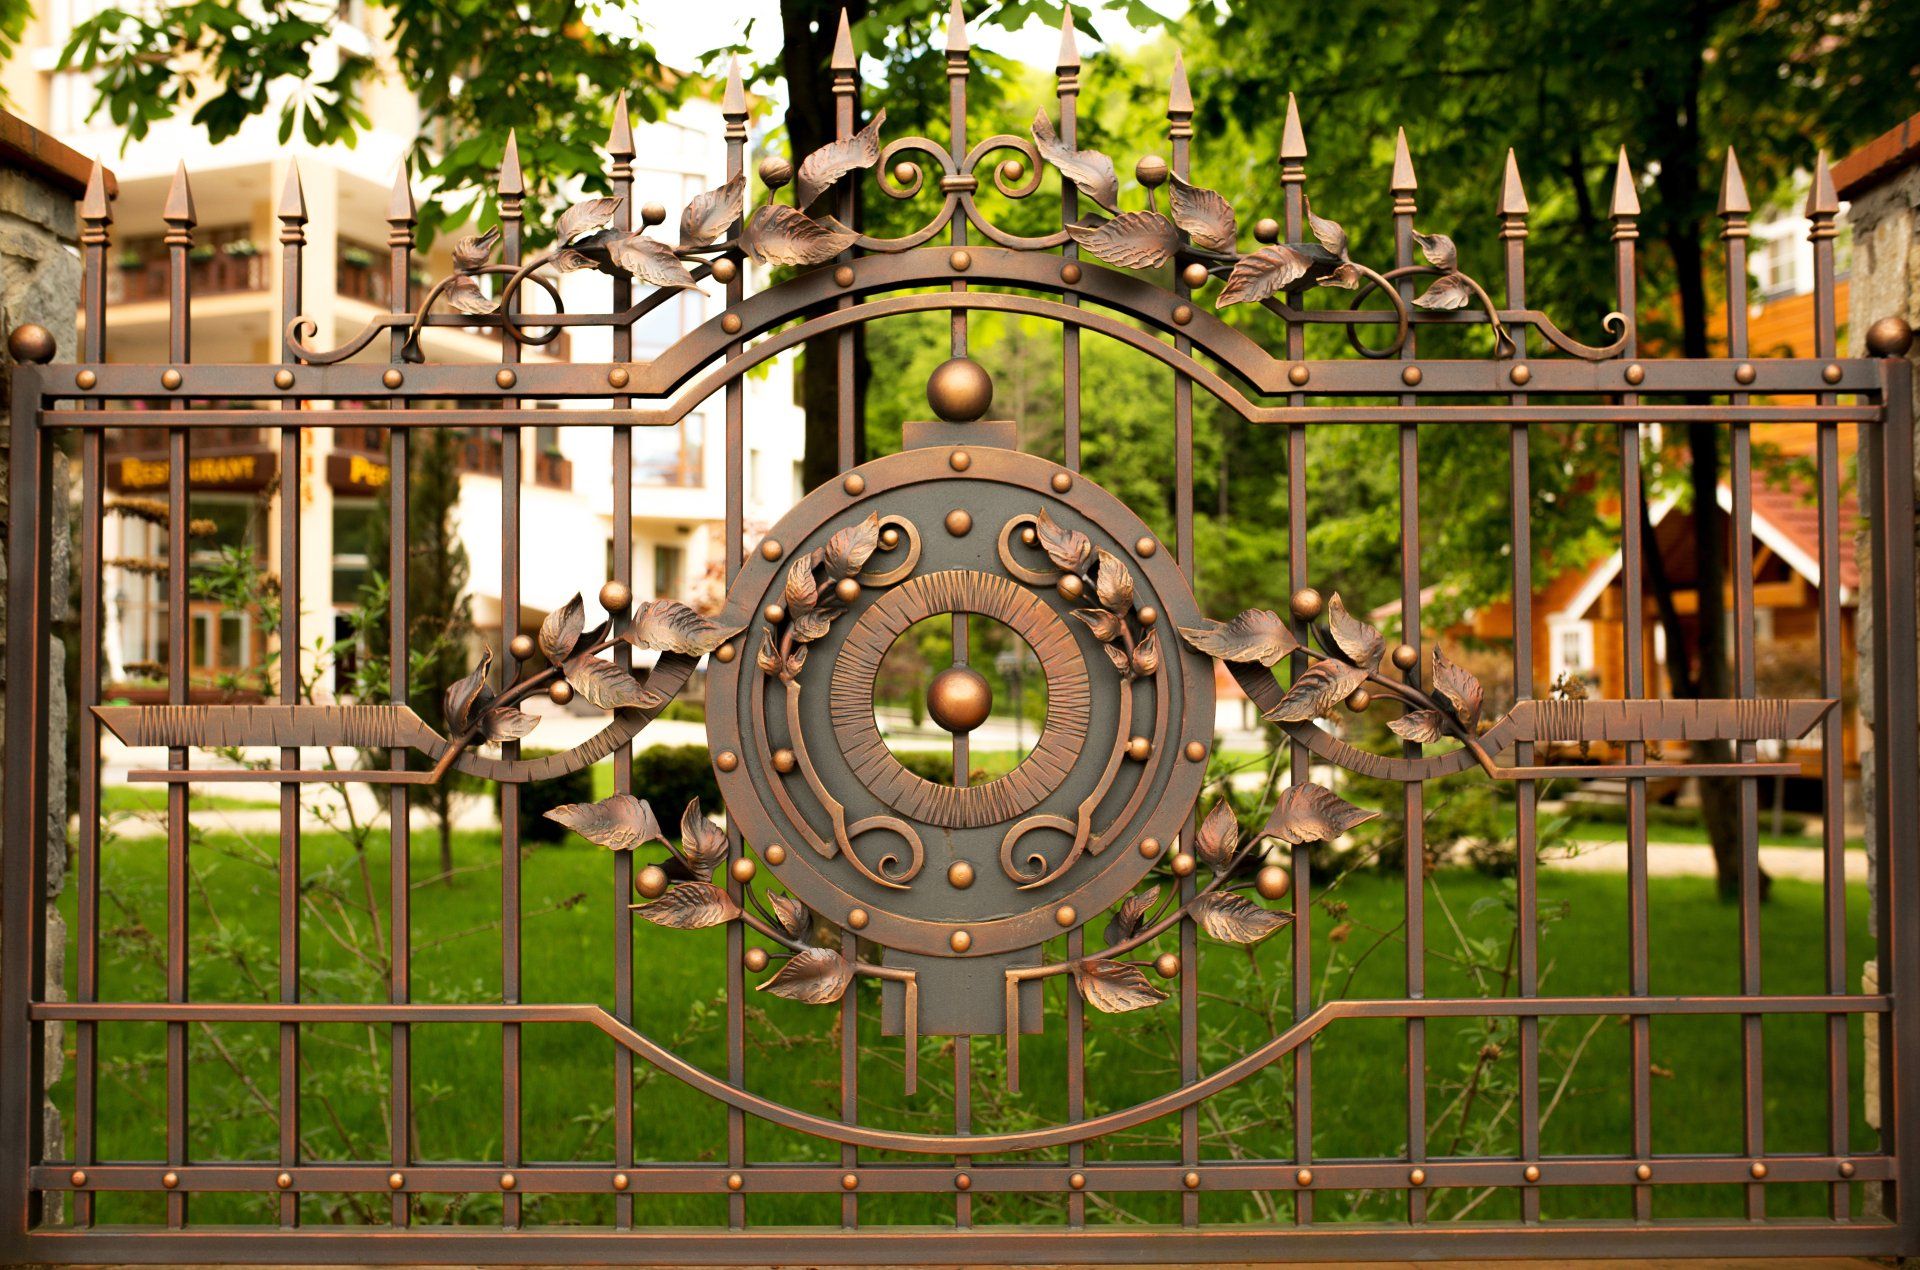 decorative wrought iron fence upscale property Massachusetts